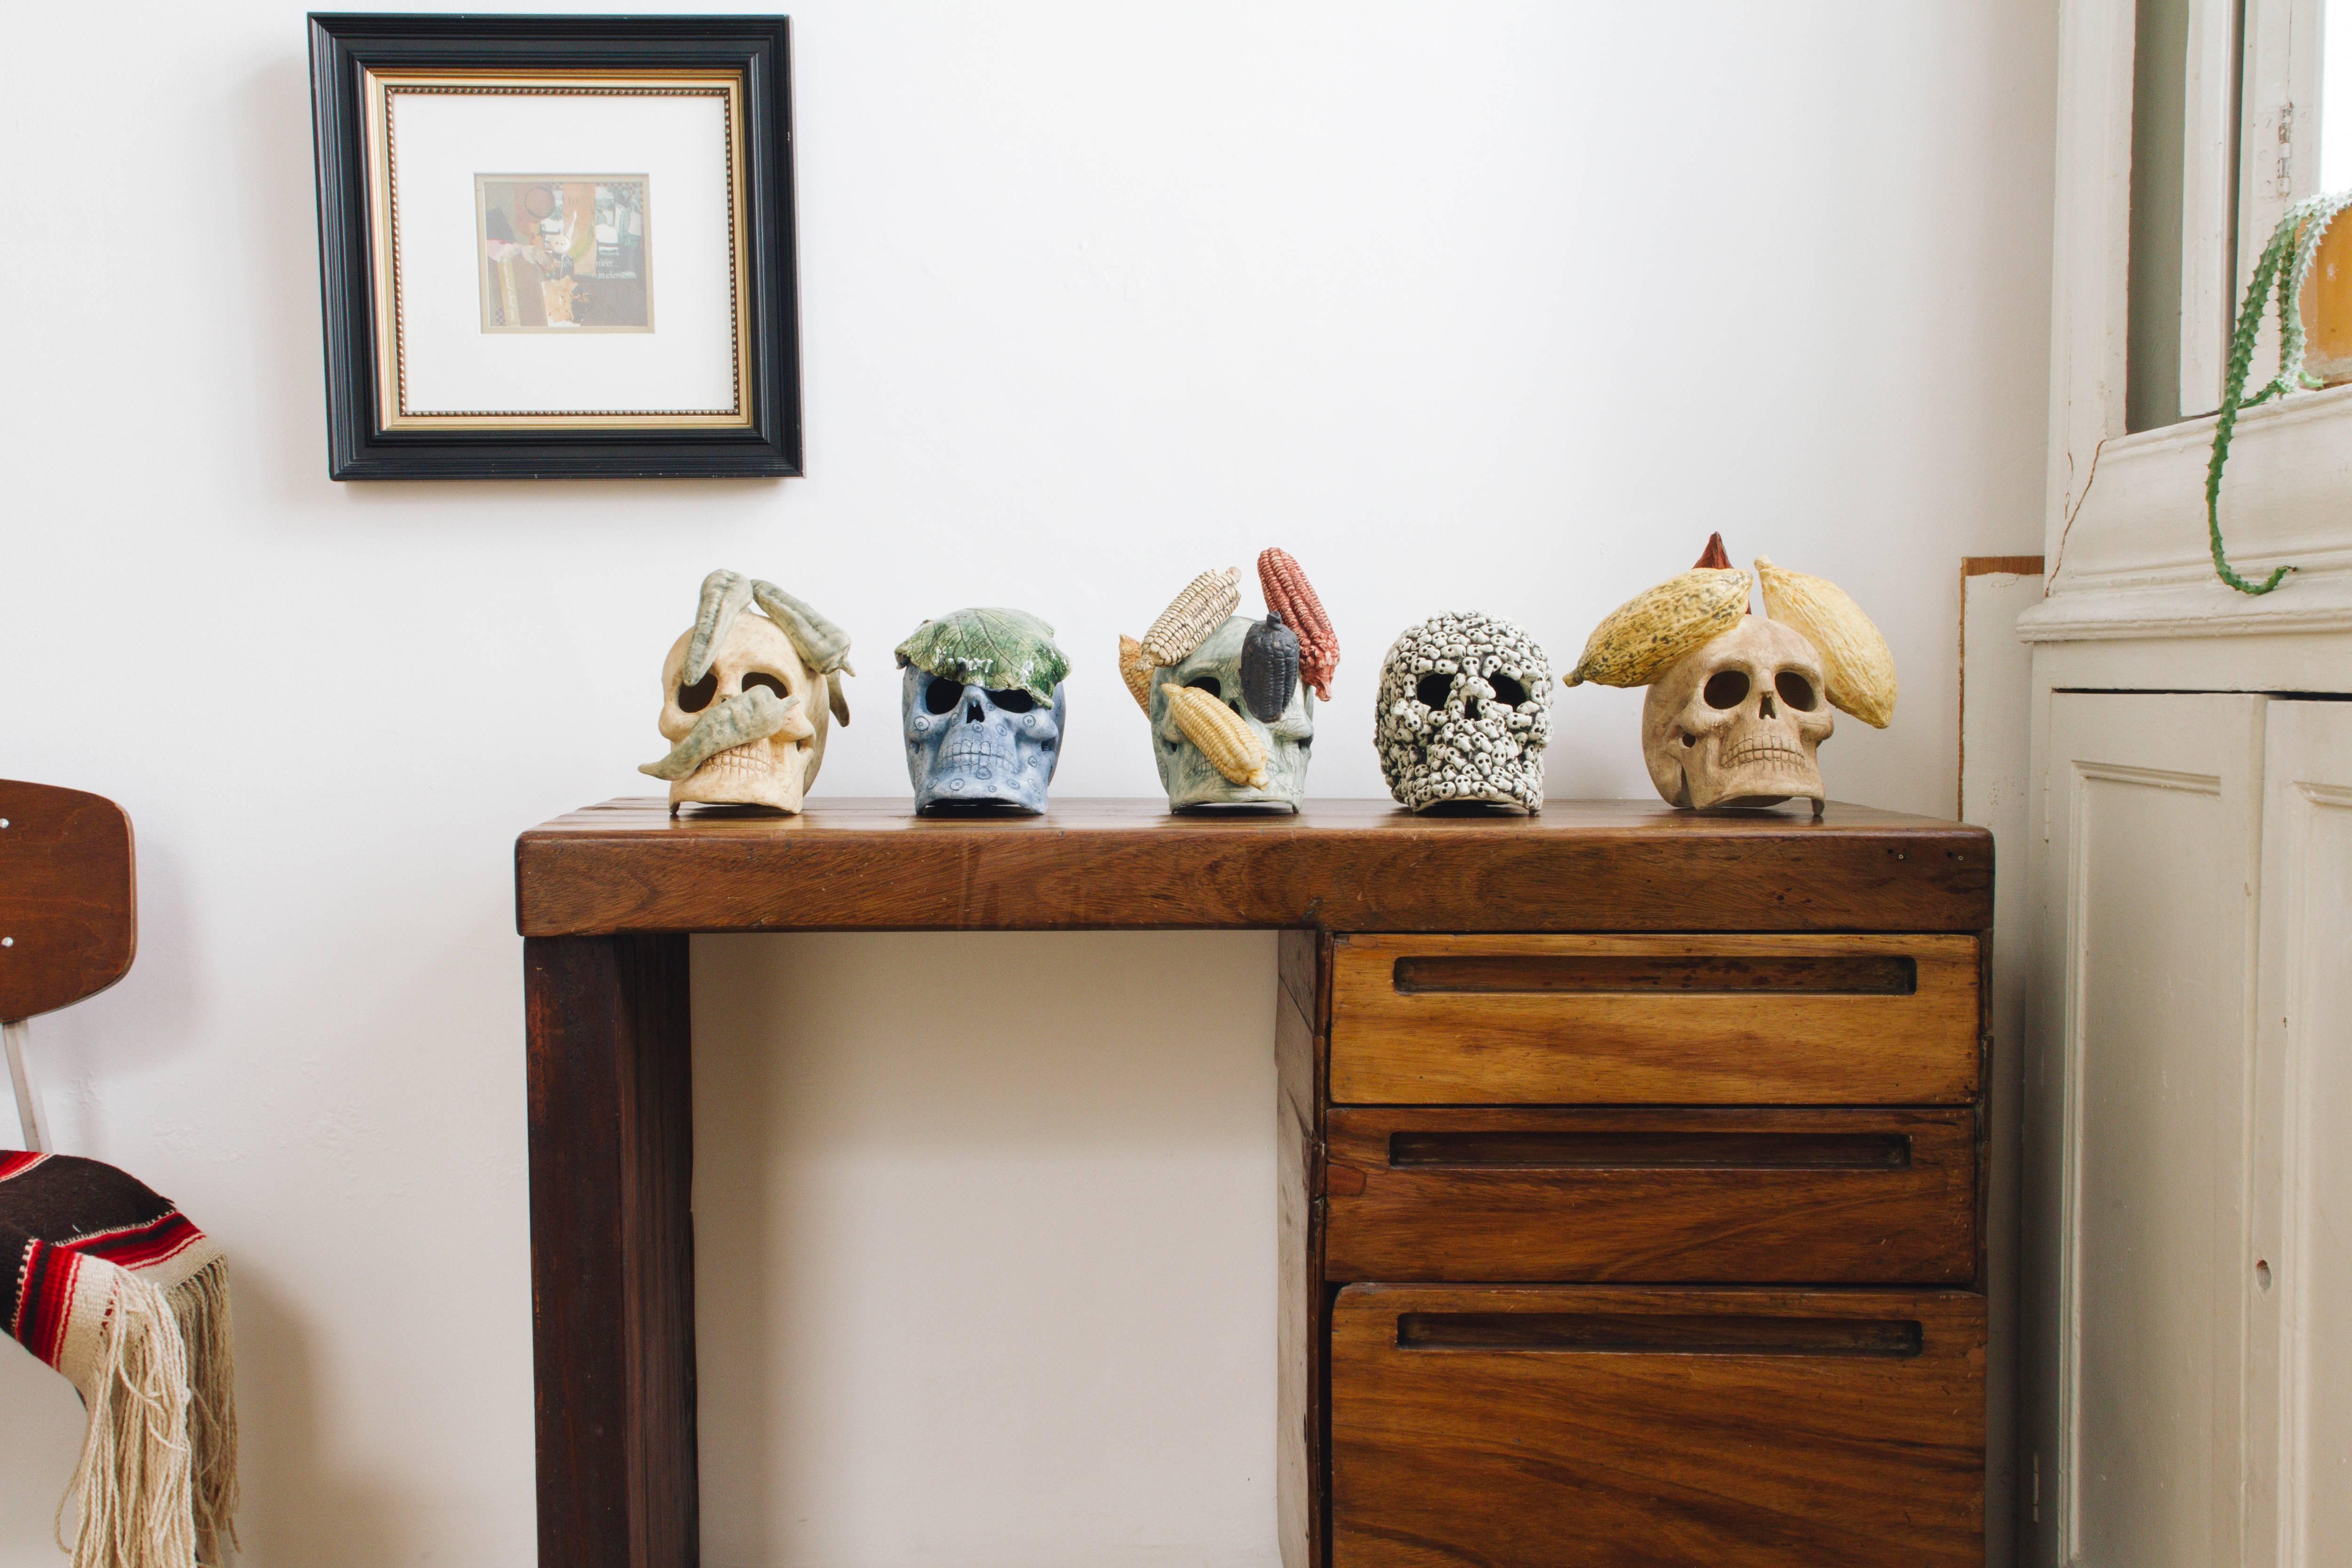 Mexican Ceramic Skull Sculpture Handcrafted Folk Art, Edition 2/30 2